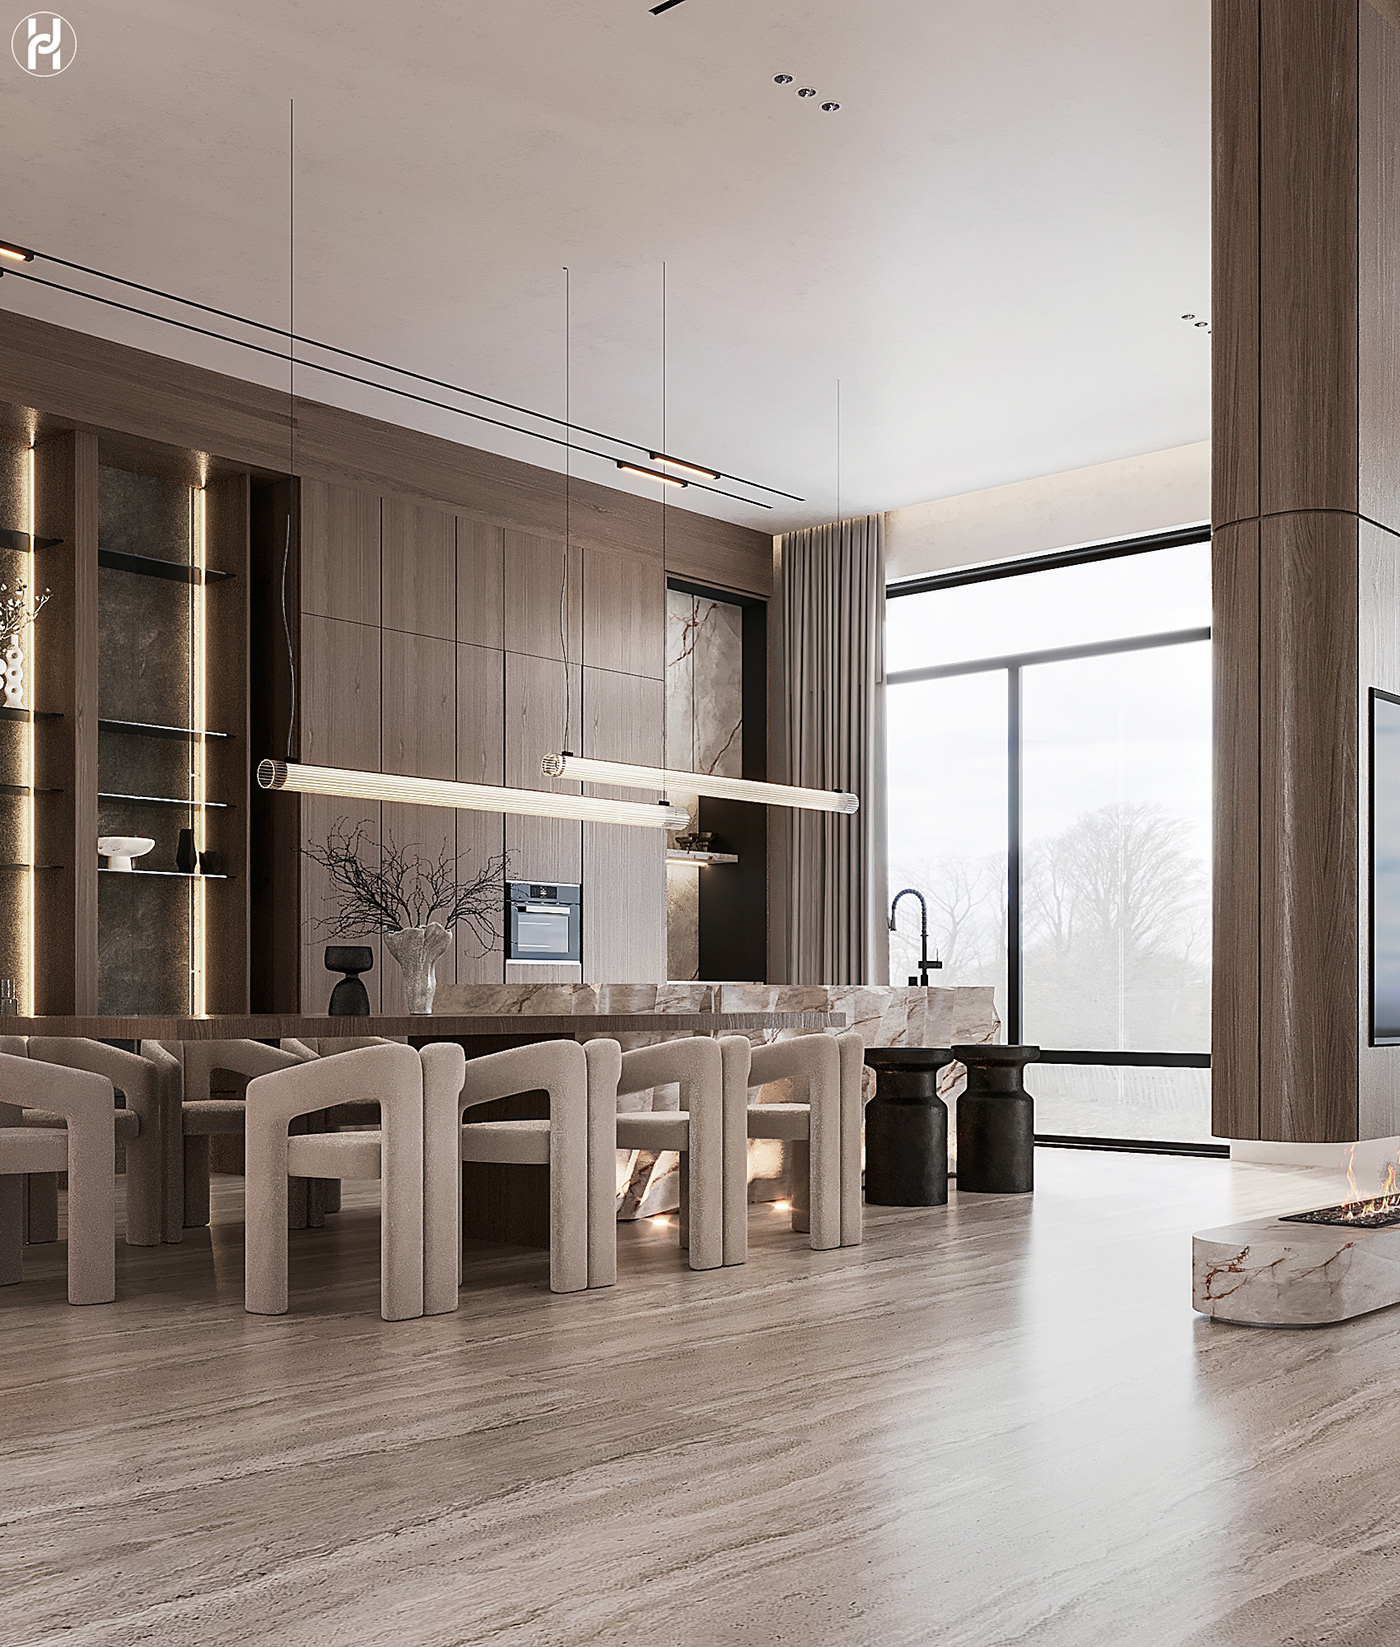 kitchen visualization dining living room modern minimal interior design  architecture Render archviz